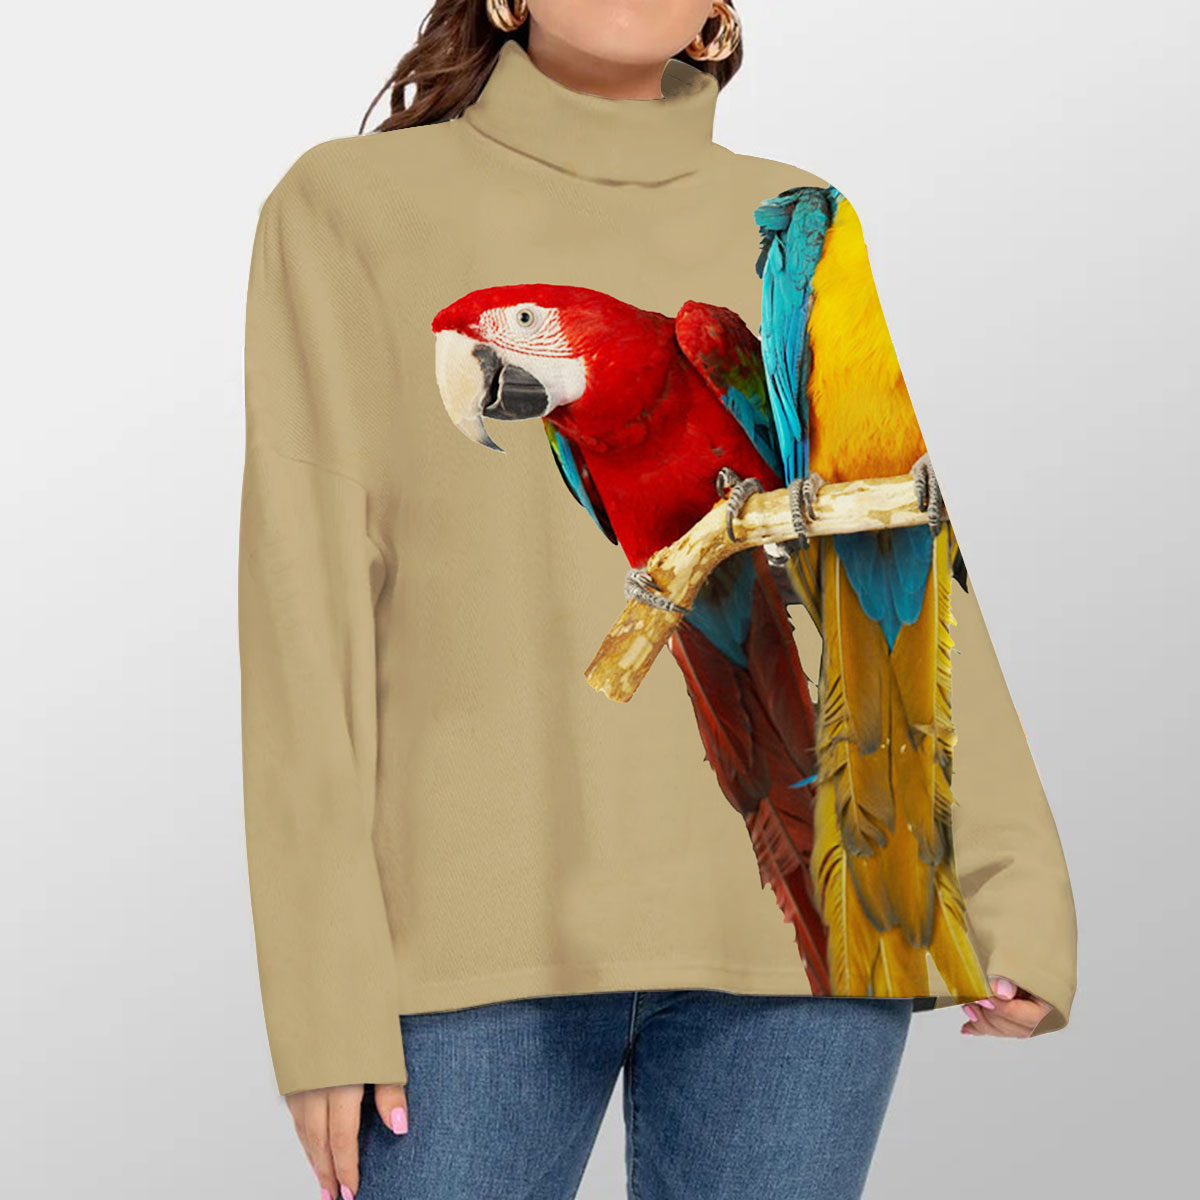 Vintage Parrot Turtleneck Sweater